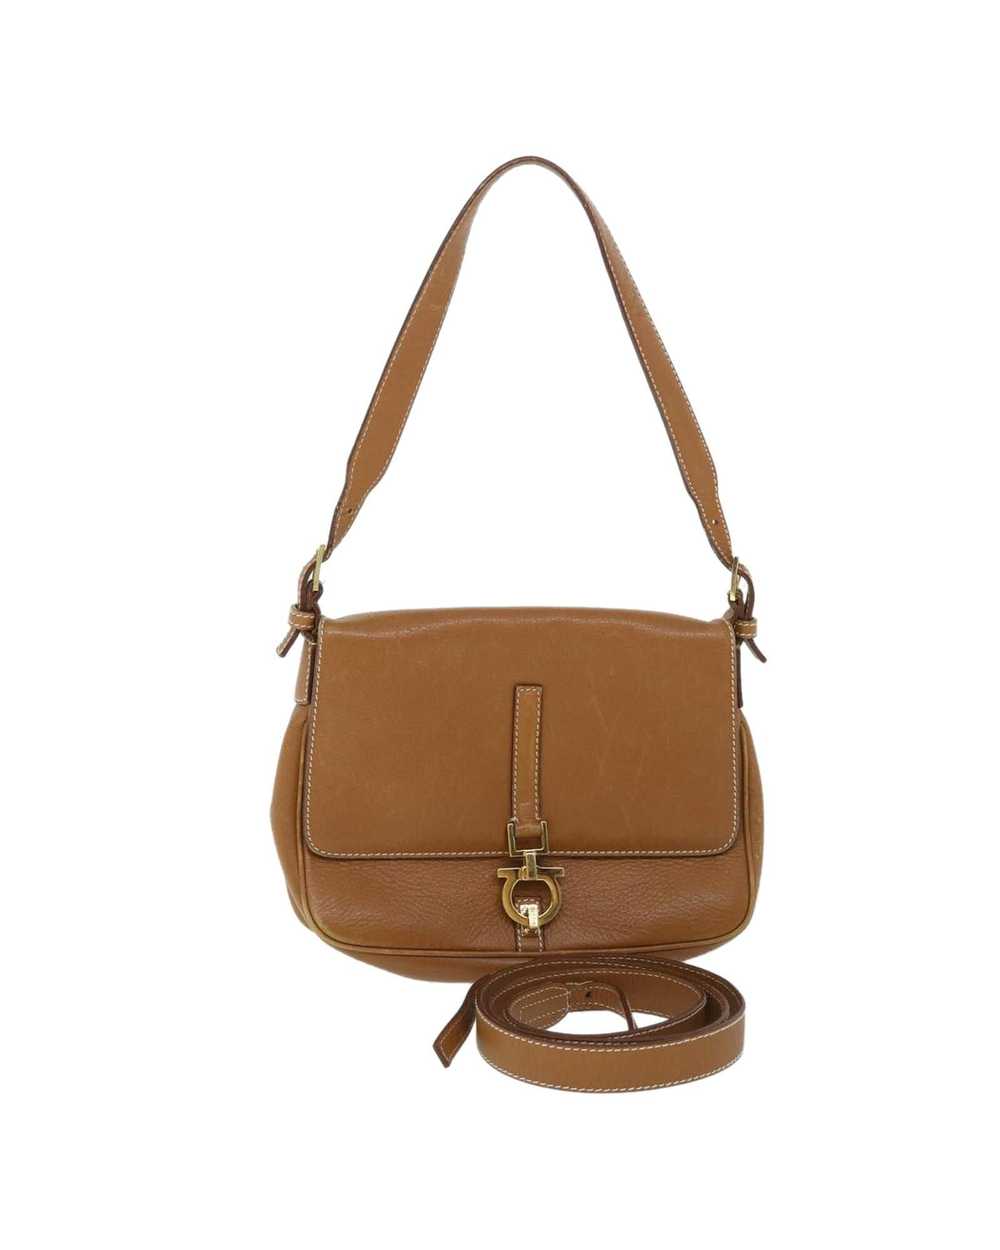 Salvatore Ferragamo Elegant Brown Leather Bag - image 1